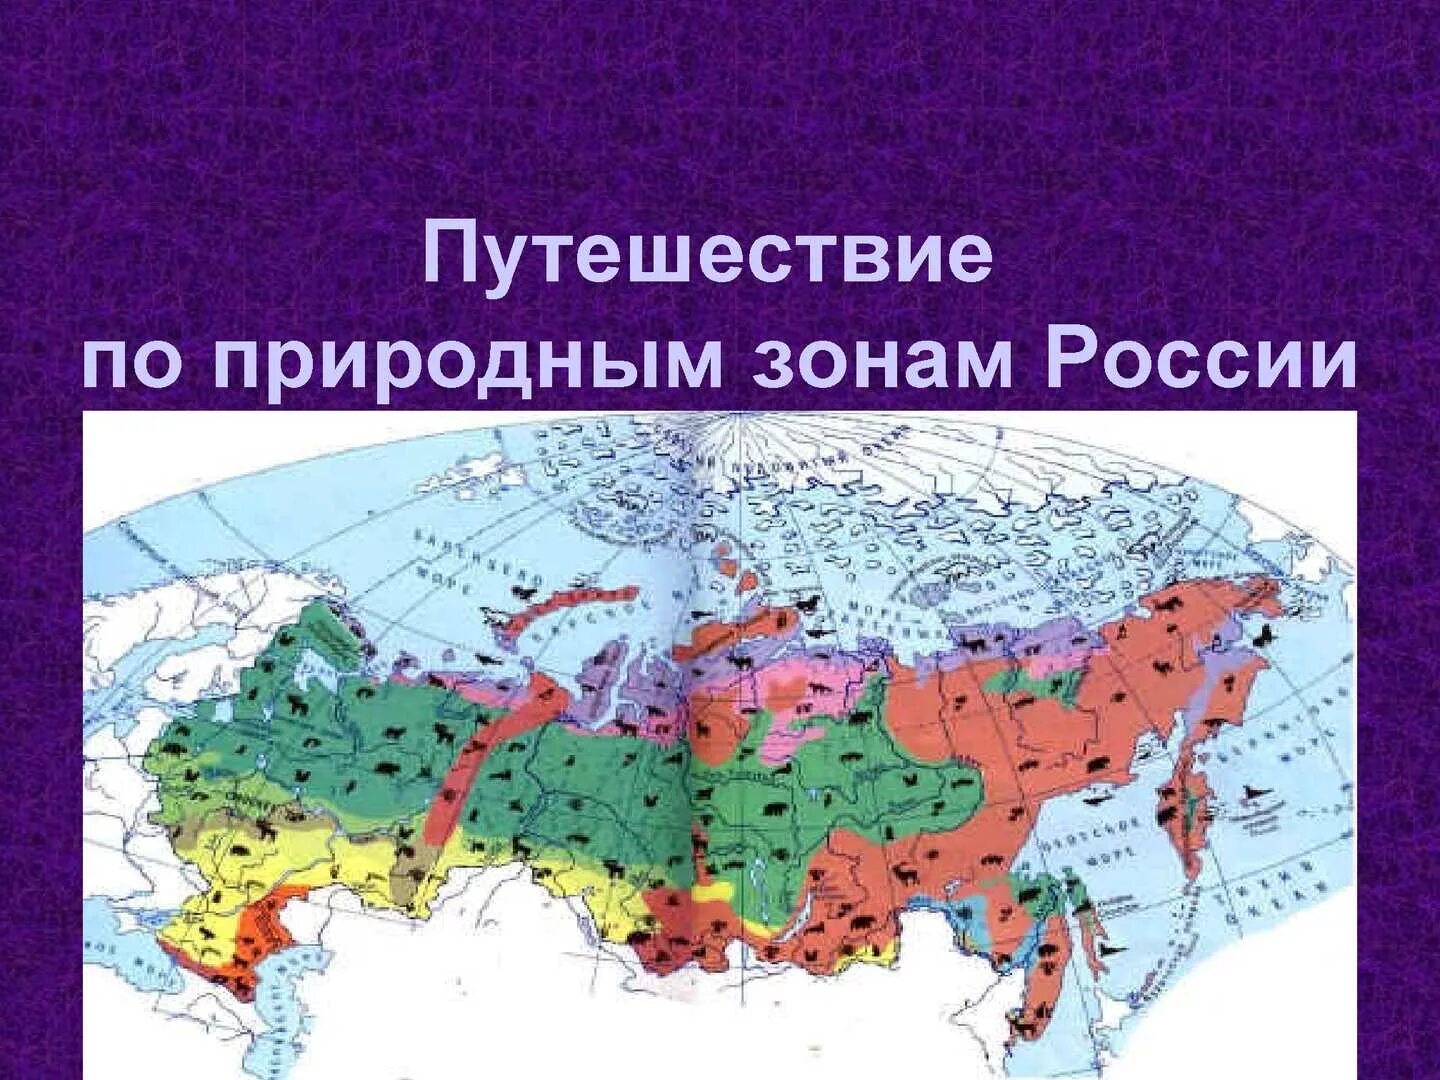 Зона тундры и лесотундры на карте России. Контурная карта зоны арктических пустынь тундры и лесотундры. Зона тундры на карте природных зон. Природныетзоны России. Зона тундры расположена между зоной и зоной